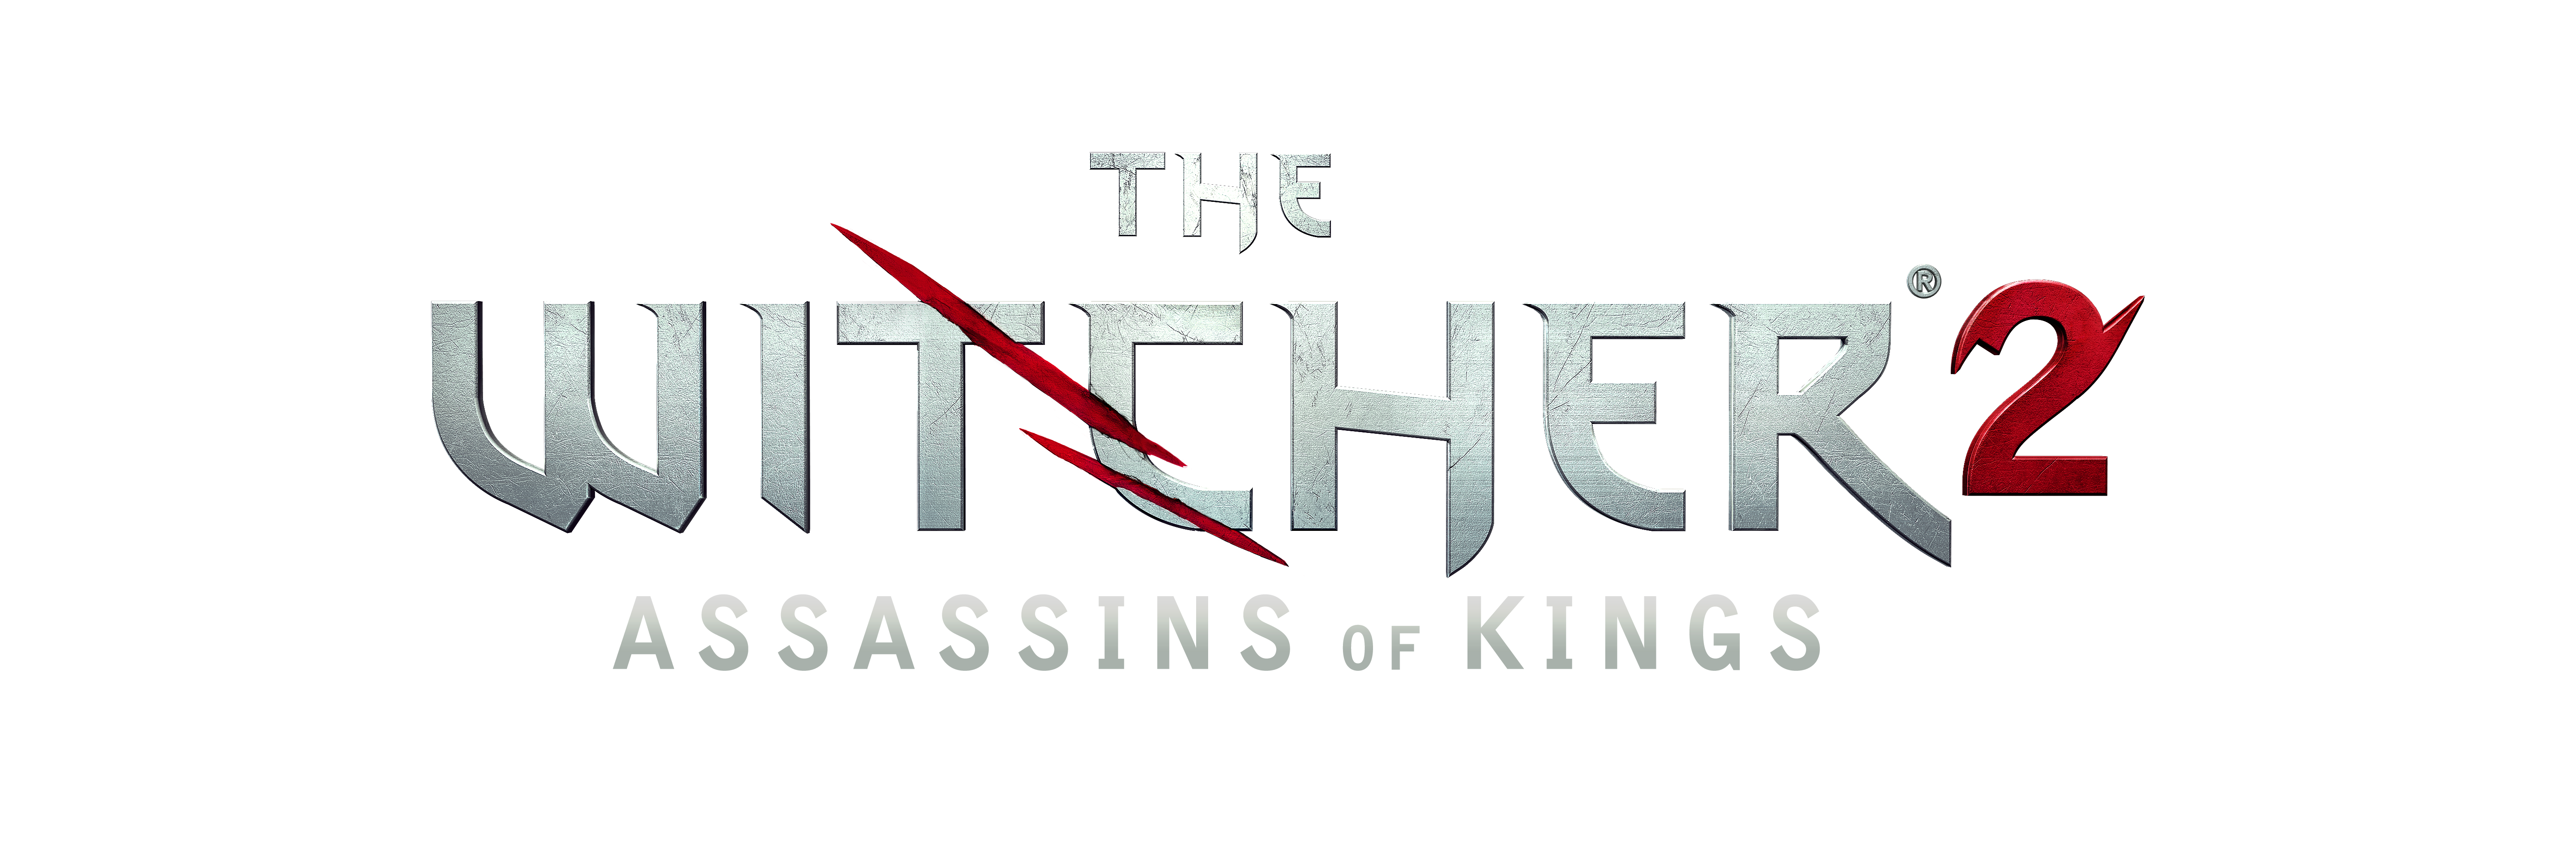 The Witcher 2 - Logo (White)